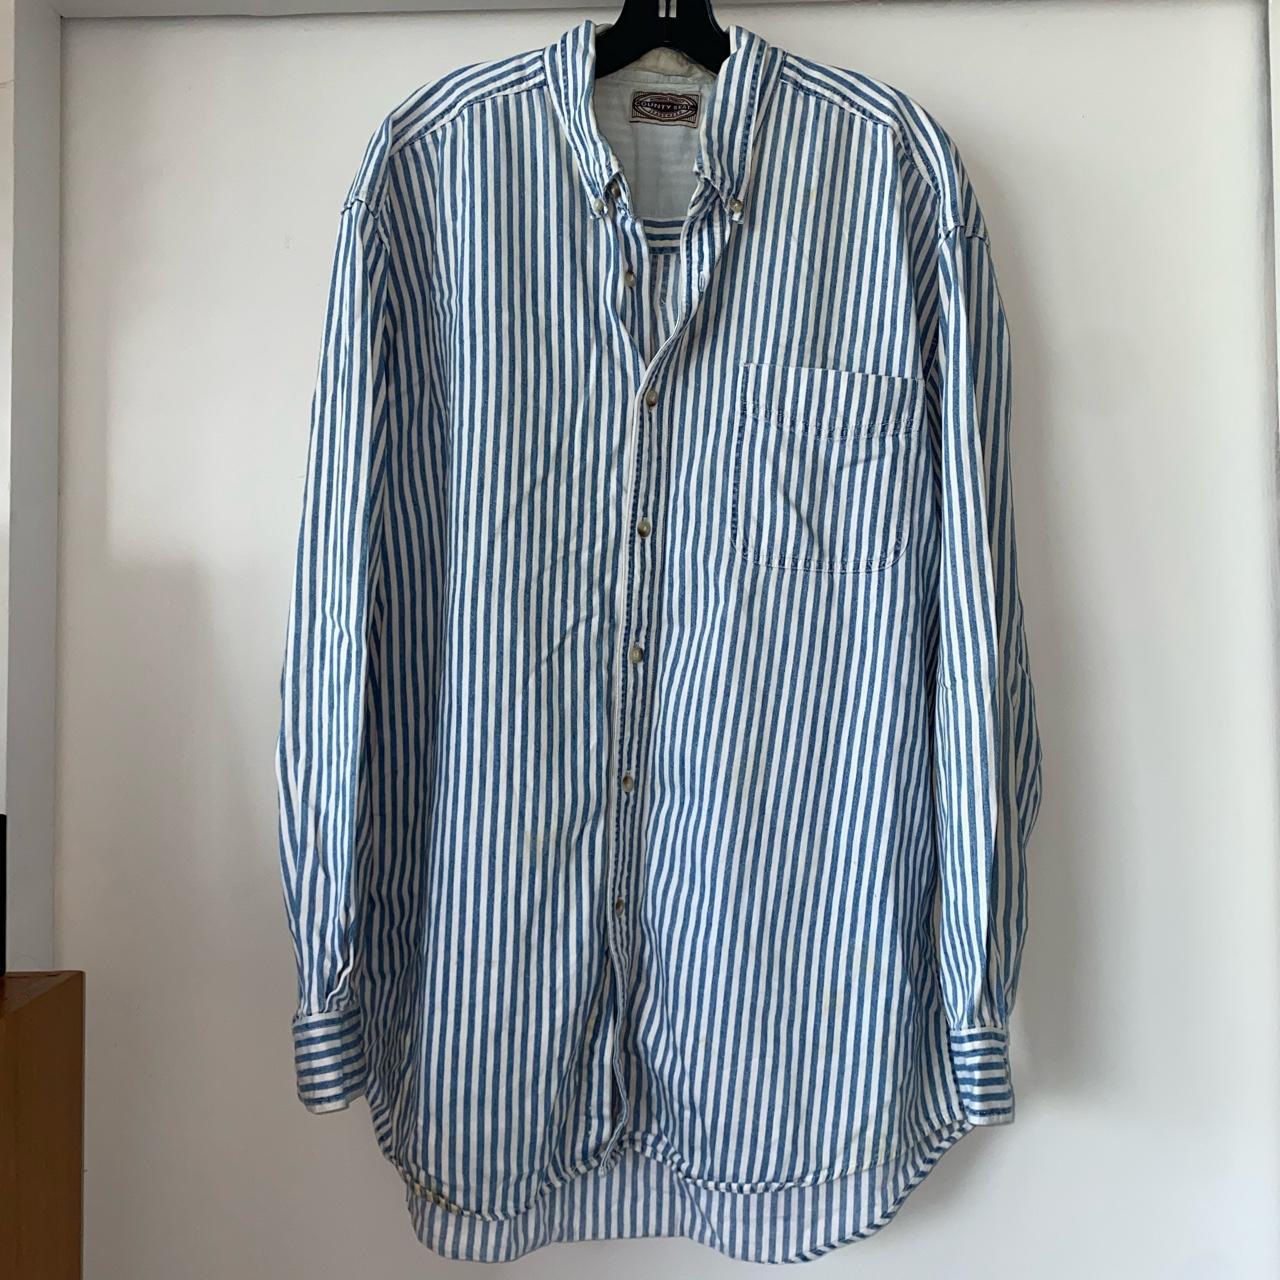 vintage men’s striped denim shirt 🌀 -oversized fit... - Depop